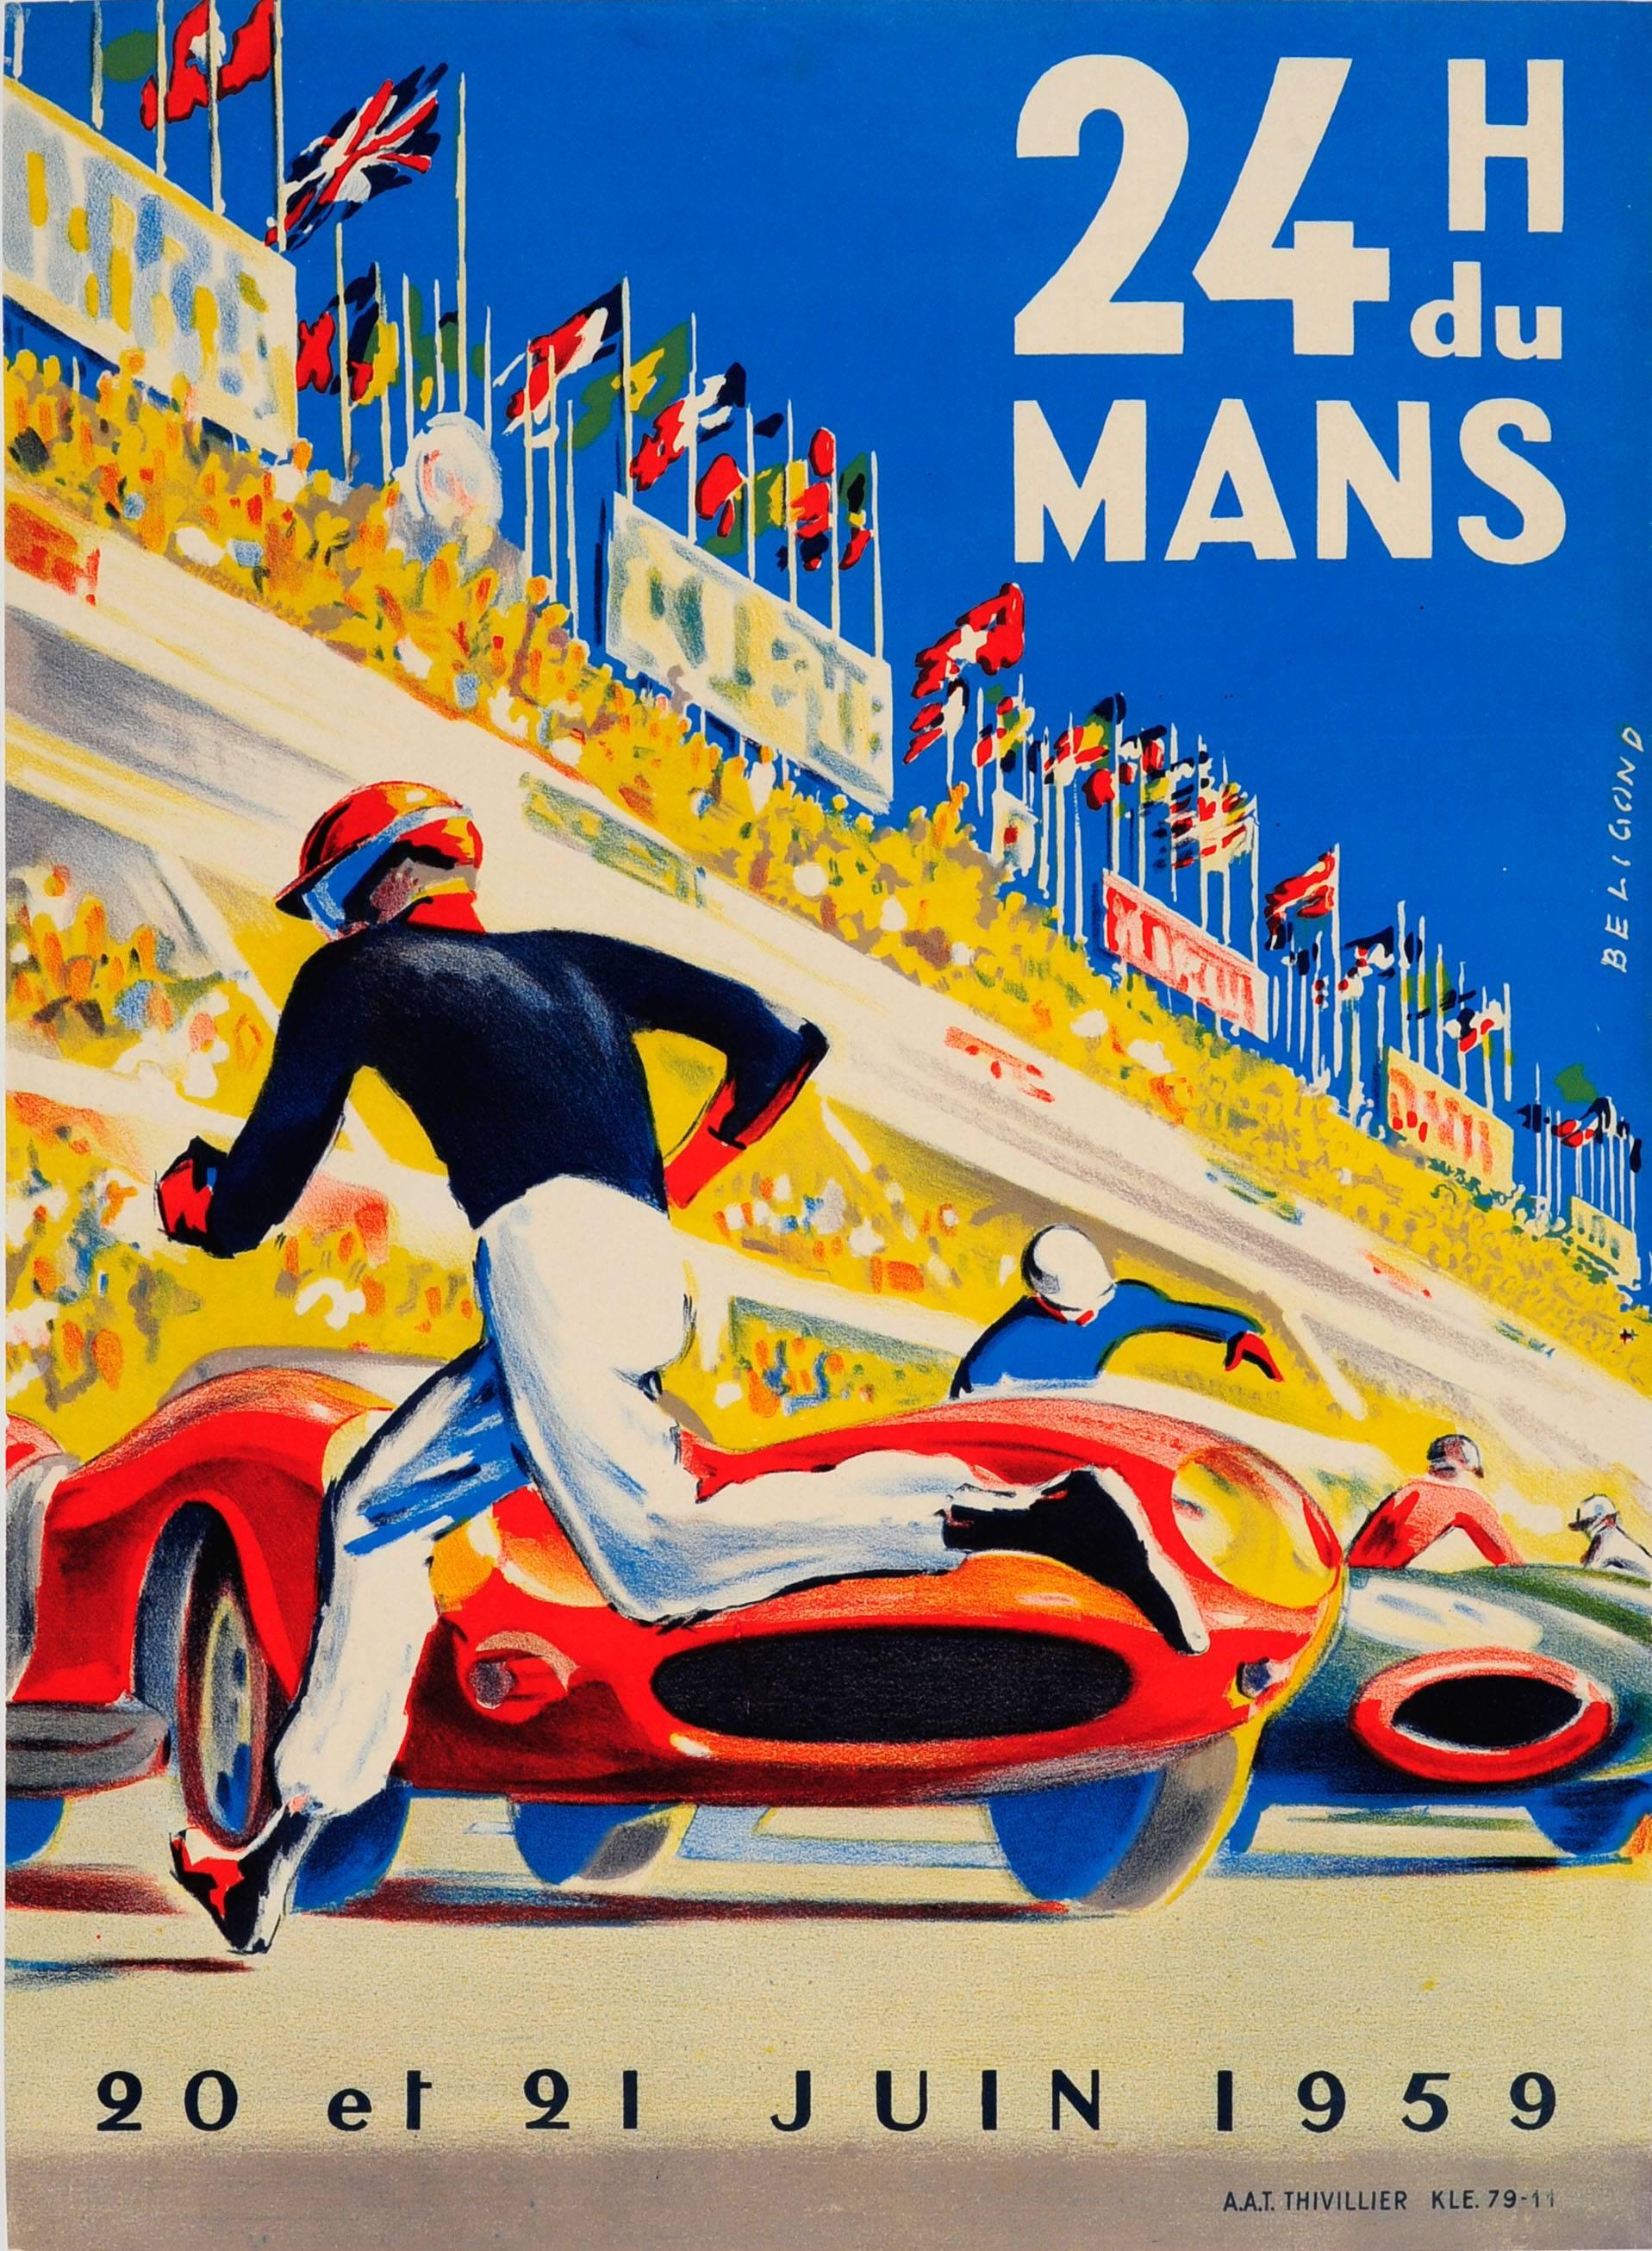 Michel Beligond Print - Original Vintage Le Mans Car Racing Poster By Beligond - 24 Heures Du Mans 1959